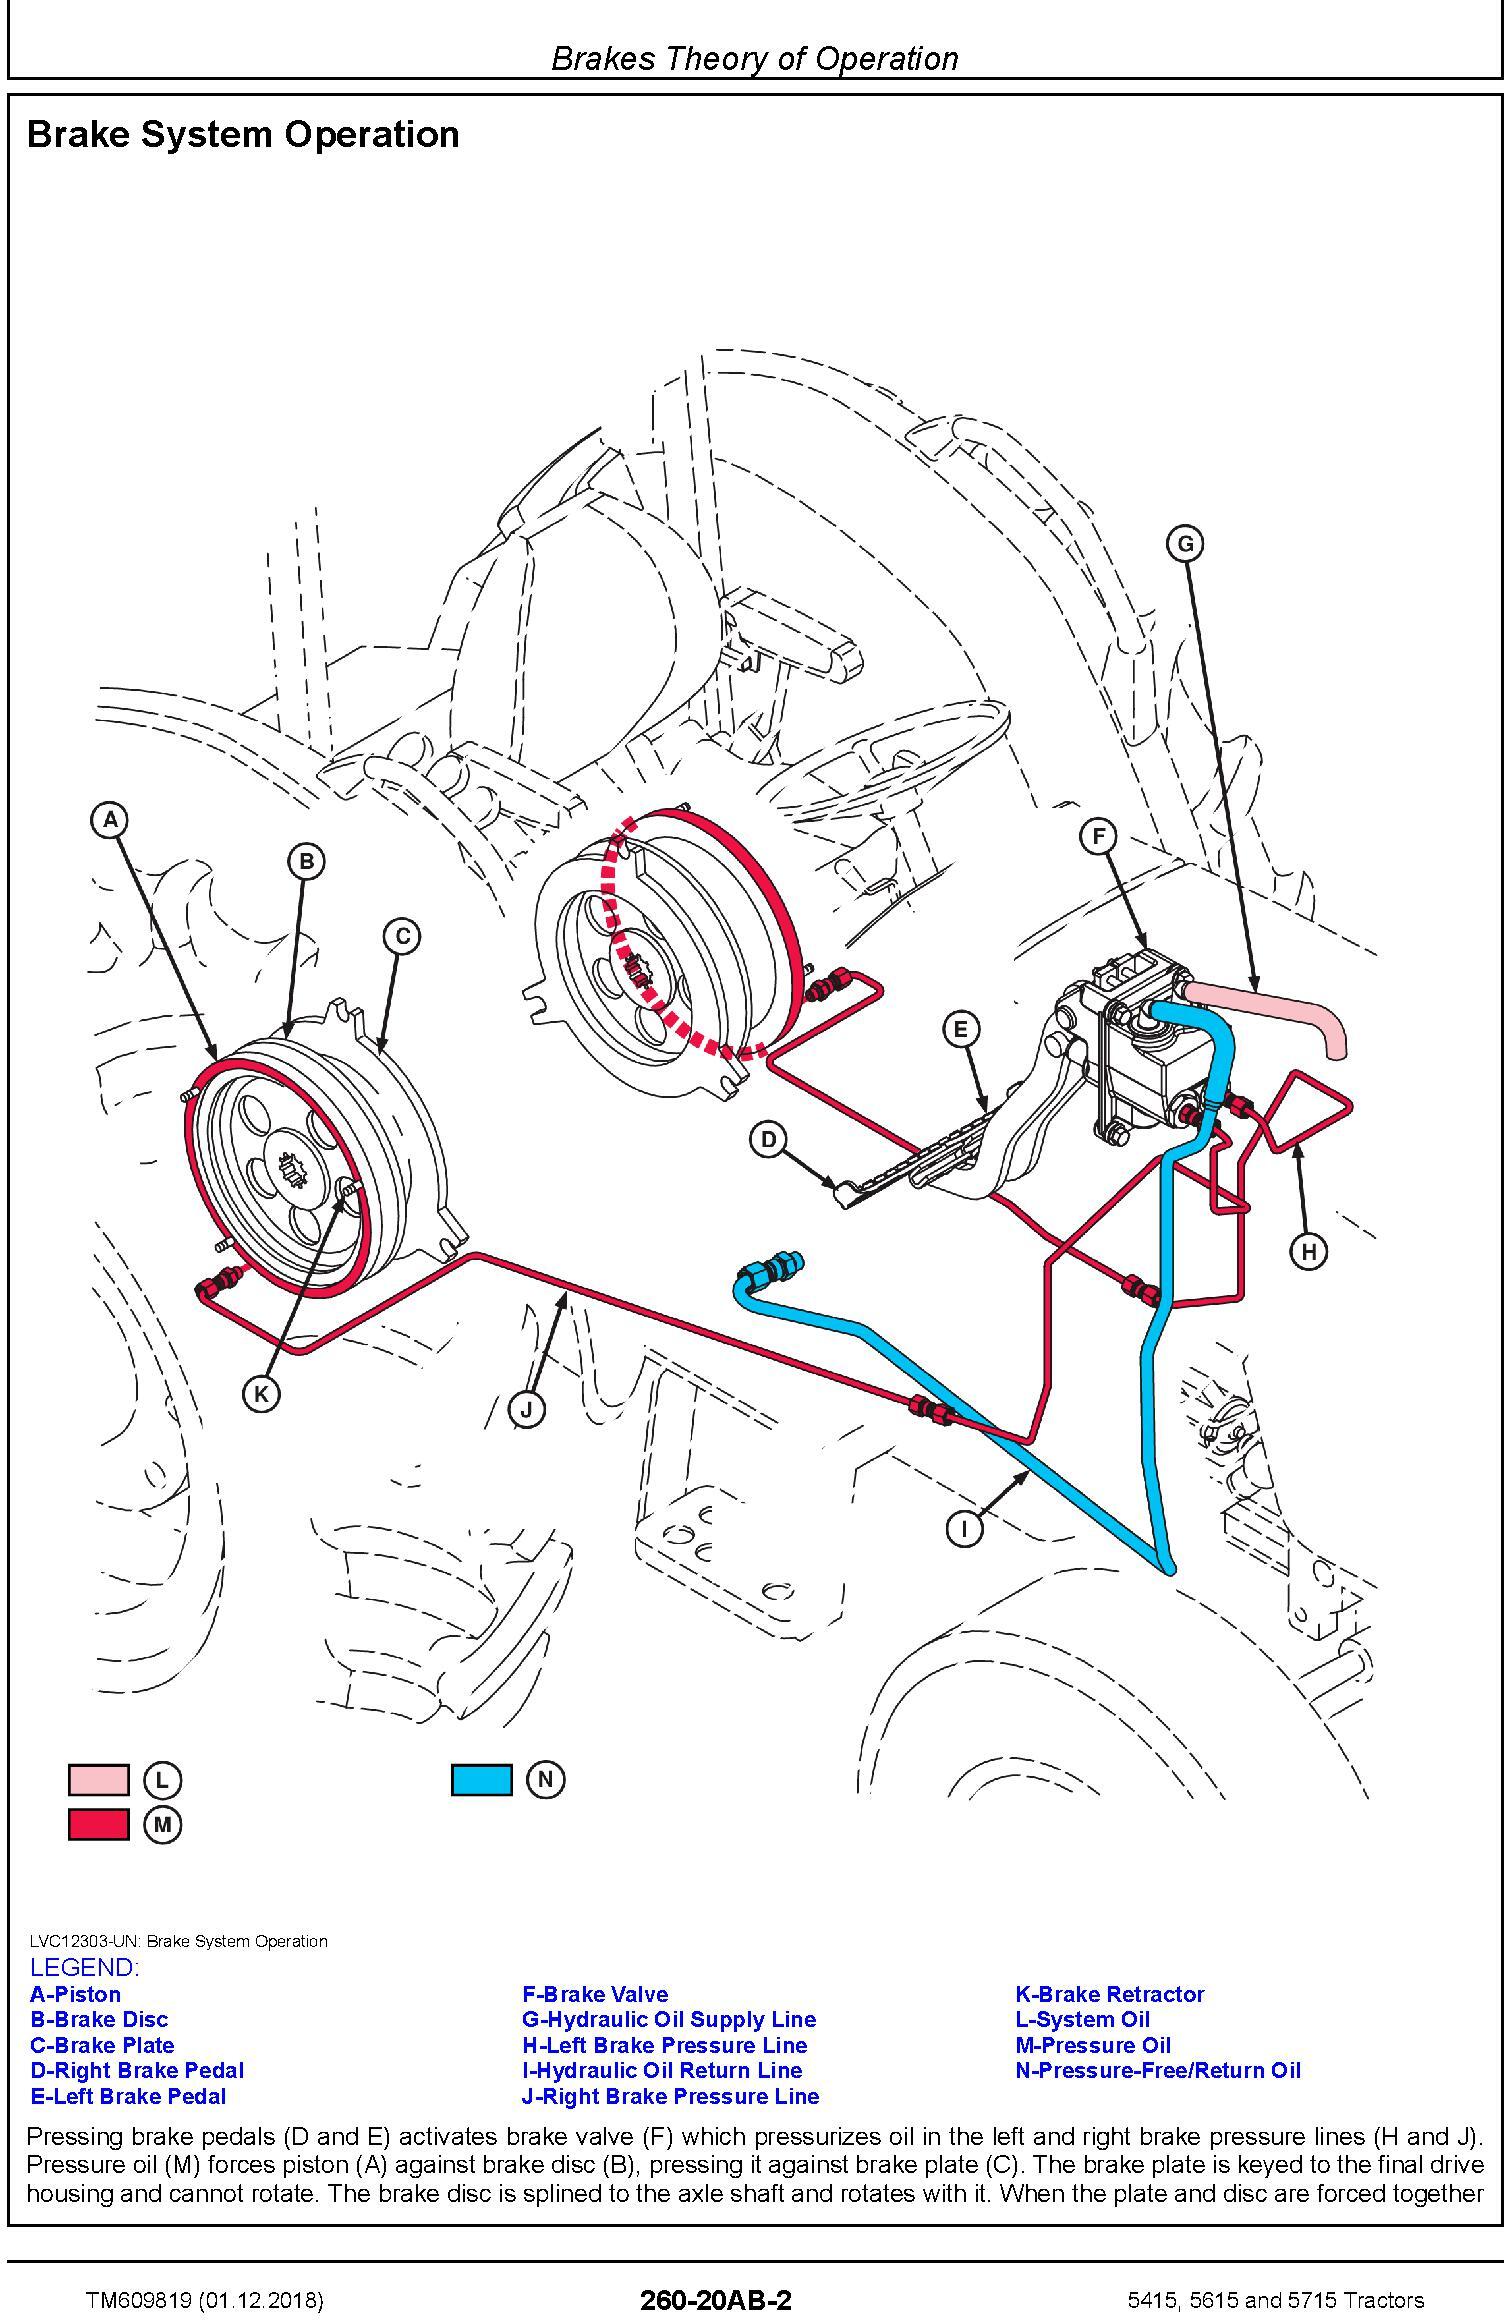 John Deere 5415, 5615 and 5715 Tractors Diagnostic Technical Service Manual (TM609819) - 2